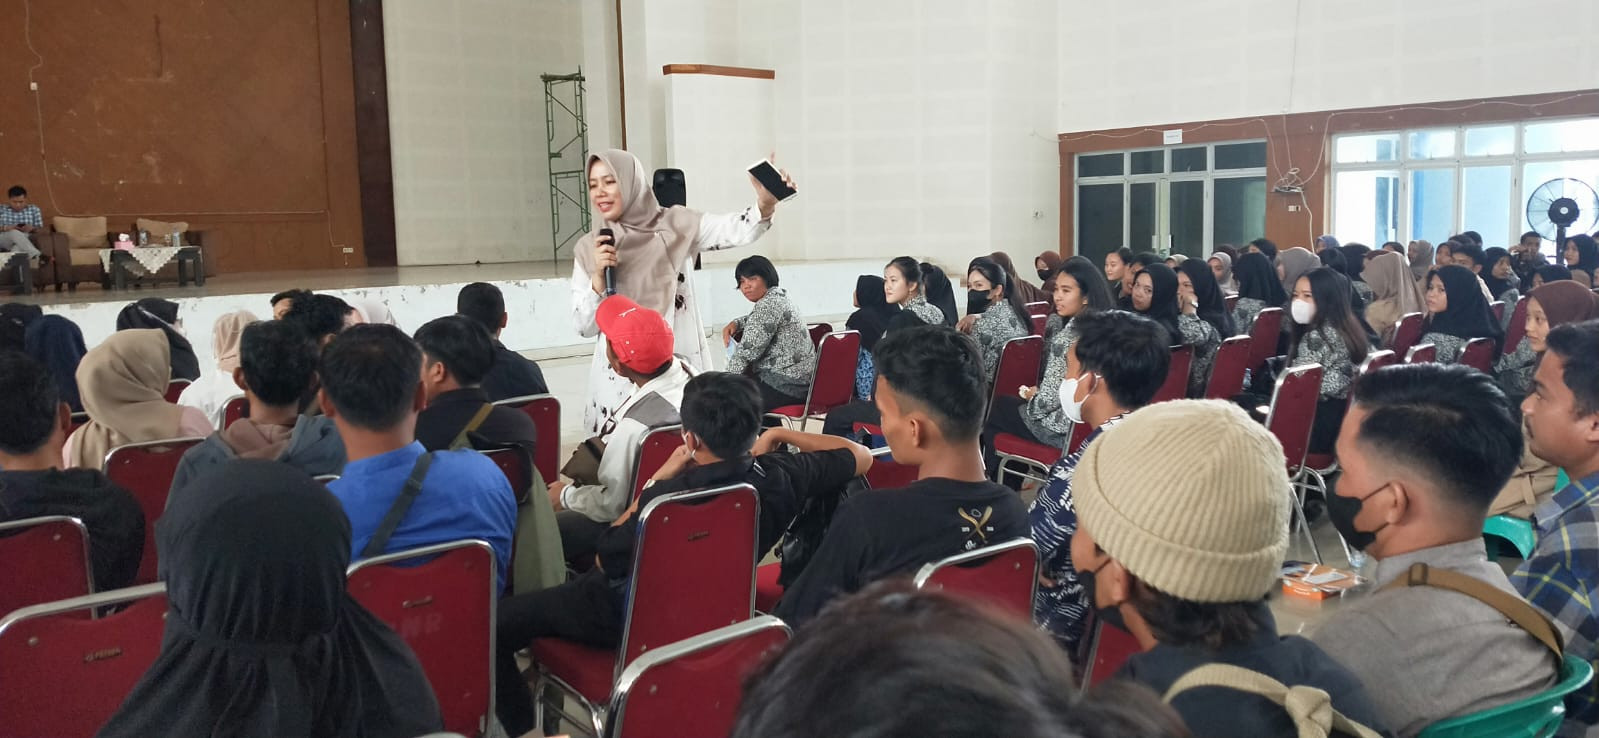 Cegah Pengangguran, DPMPTK Bateng Gelar Seminar Karir Diikuti 300 Peserta